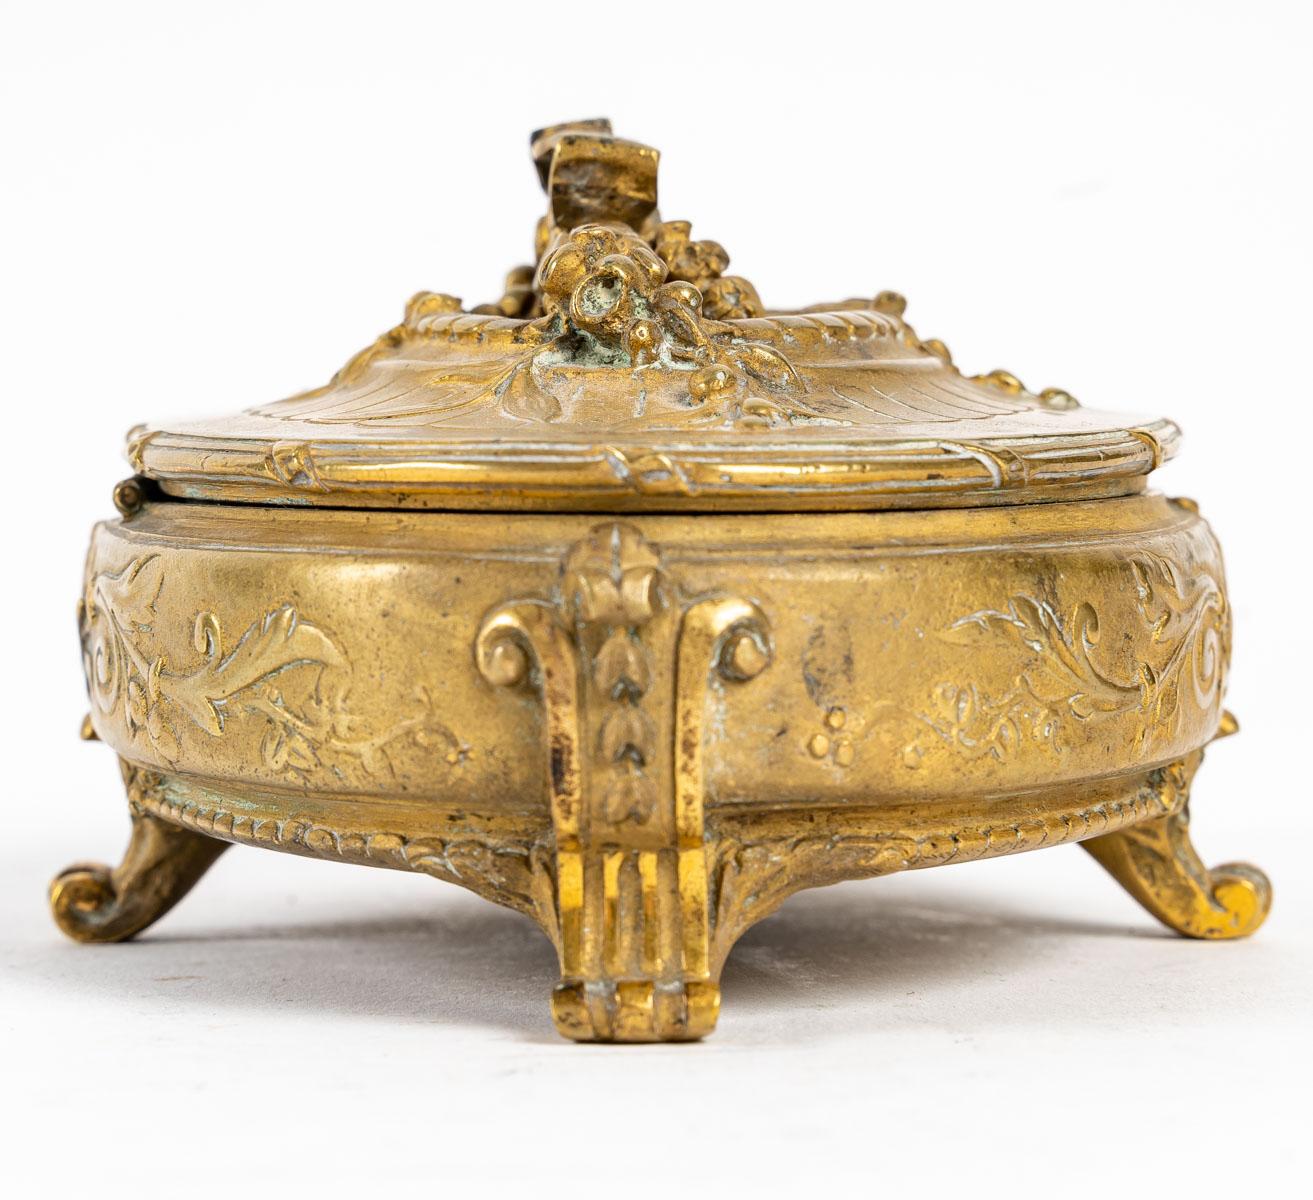 Boîte à bijoux en bronze ciselé, 19e siècle
Boîte à bijoux en bronze ciselé, intérieur en soie rouge, époque Napoléon III, XIXe siècle
Mesures : H : 7 cm, L : 16 cm, P : 10 cm.